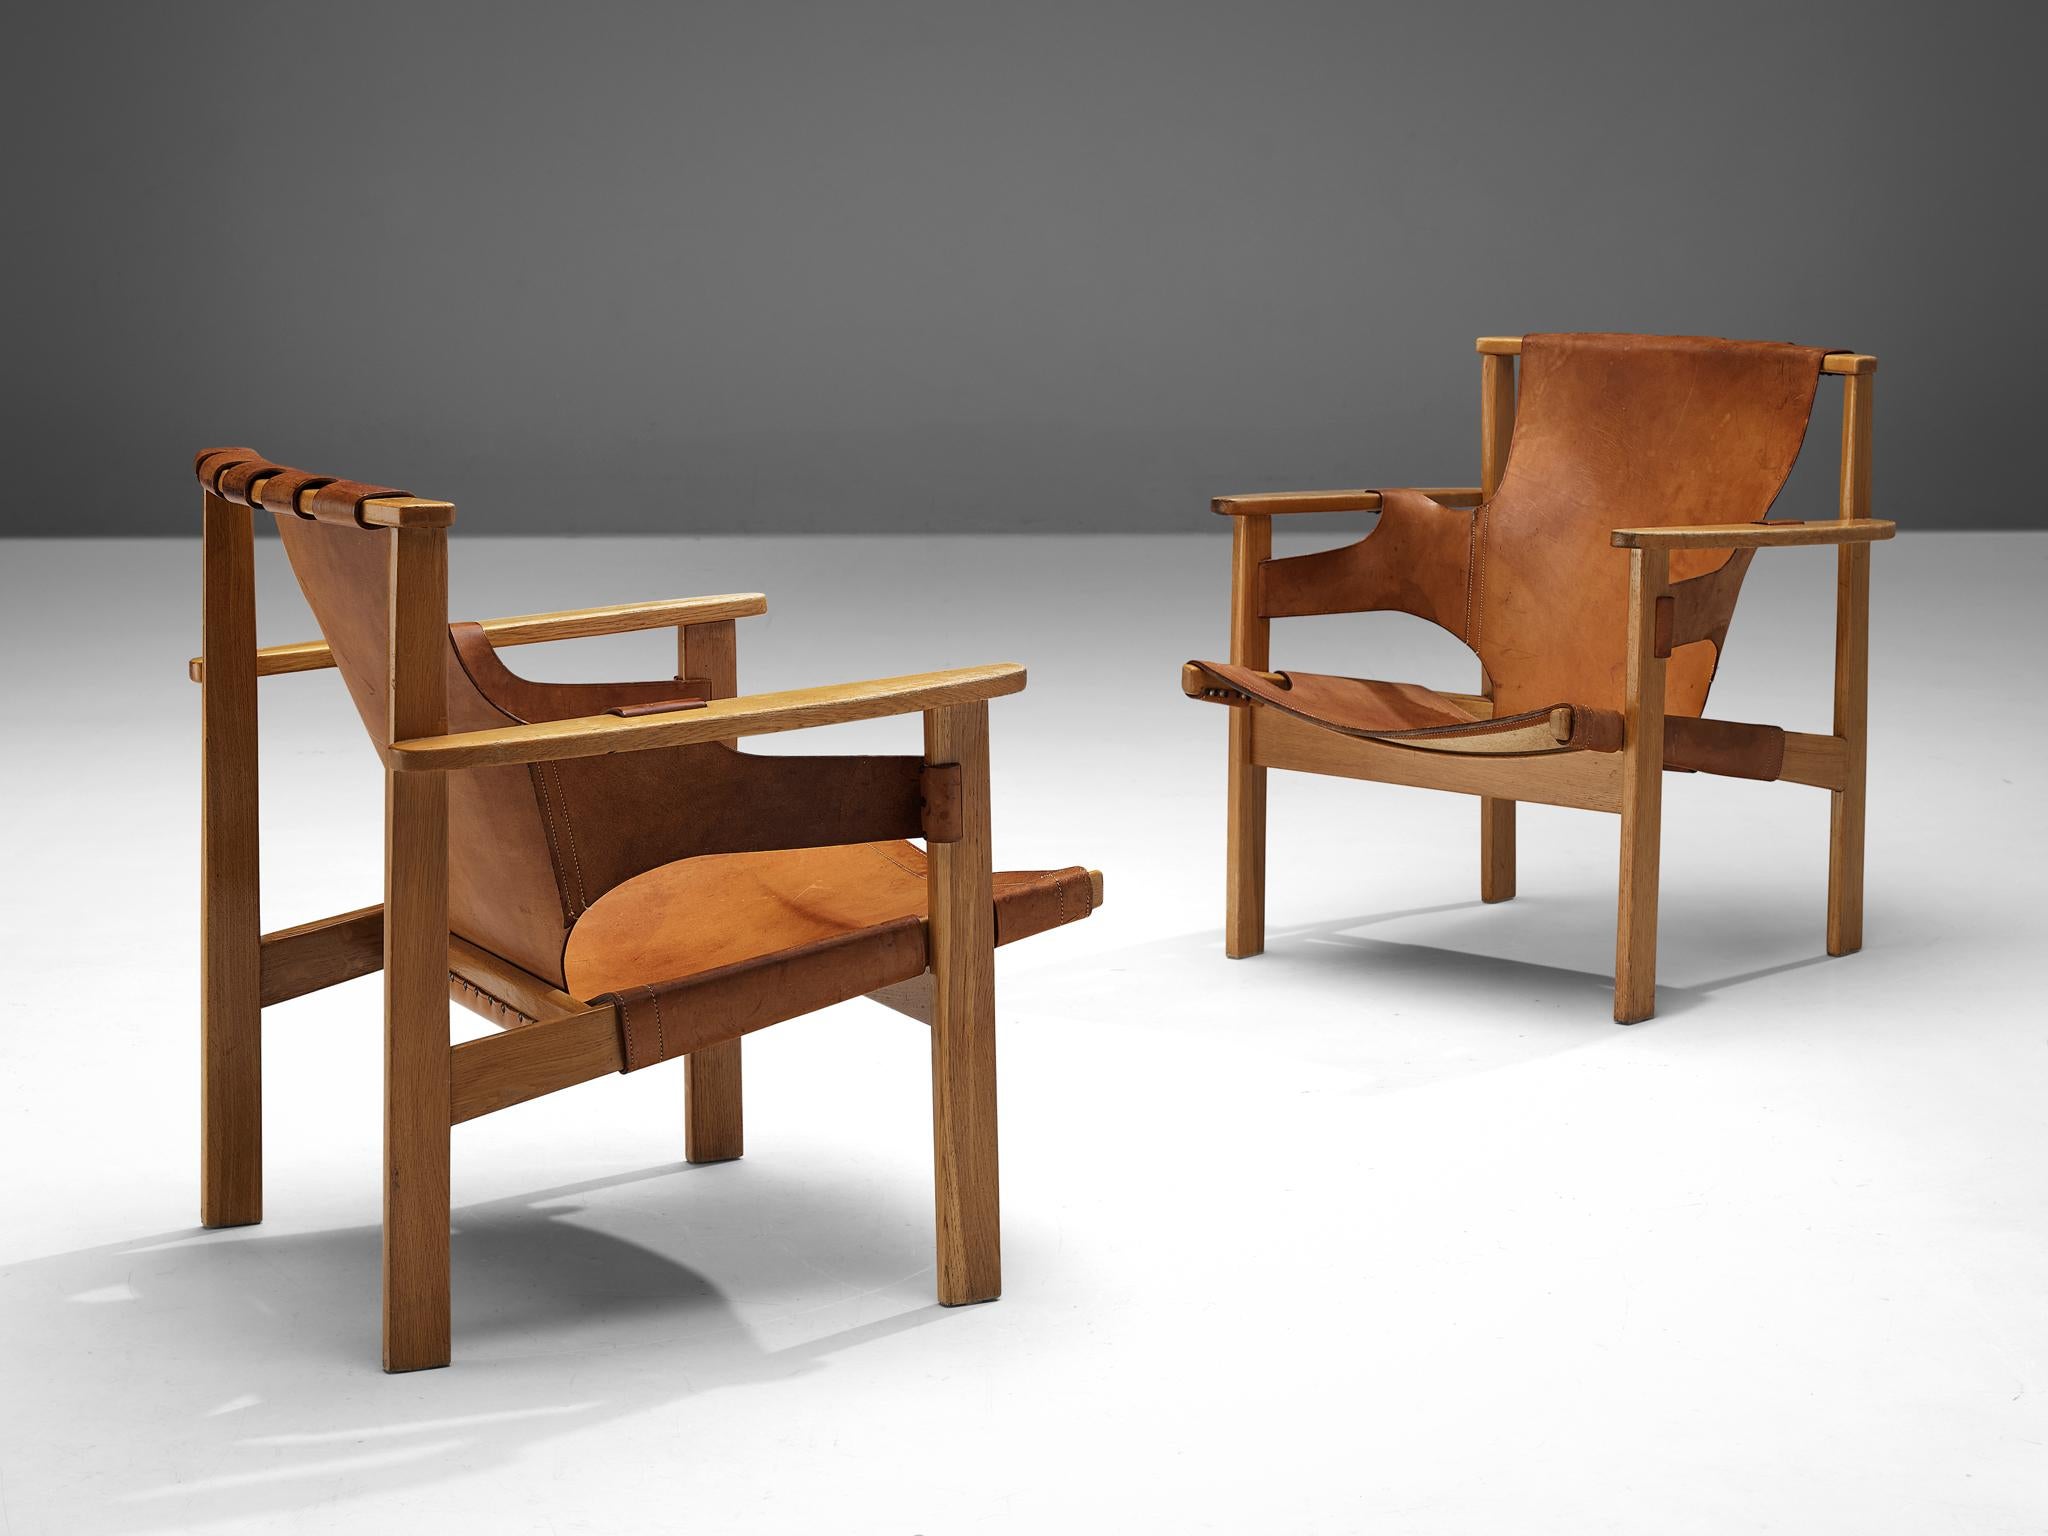 Carl-Axel Acking, paire de chaises longues modèle 'Trienna', chêne, cuir, Suède, conçu en 1957

Ces chaises longues caractéristiques ont été conçues par l'architecte et designer de meubles suédois Carl-Axel Acking en 1957. Le nom de la chaise,